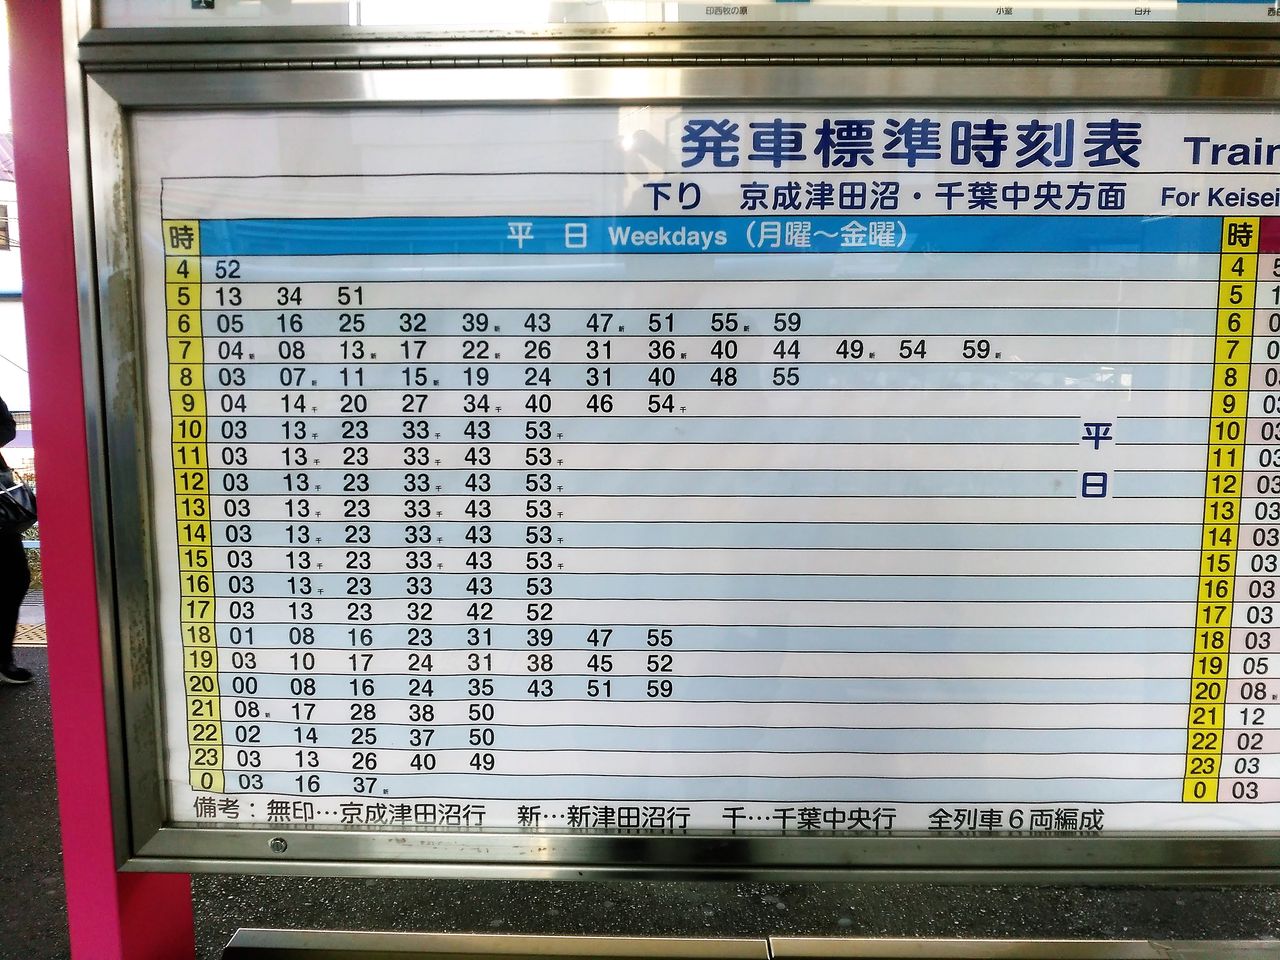 新京成線 その1 全車6両化でいいのか 朝ラッシュ時に乗降観察してきました Shinoの鉄道旅行 ホテル宿泊備忘録